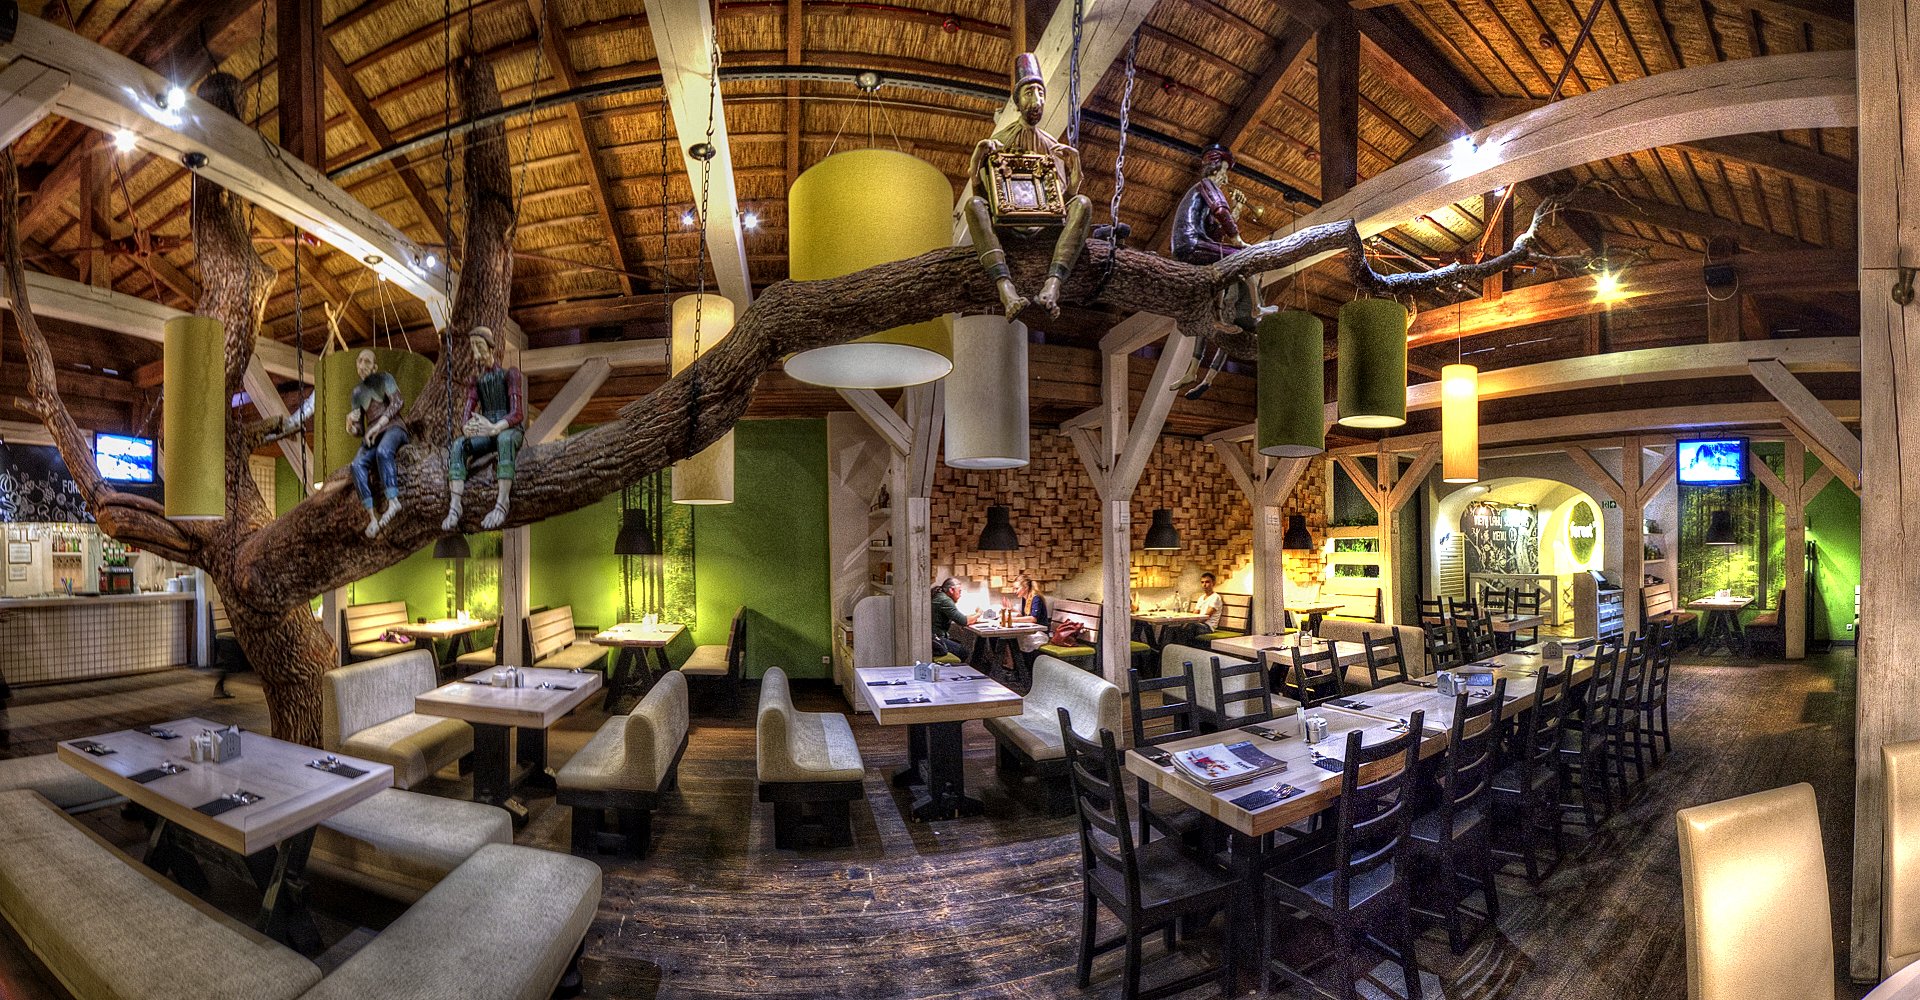 Ресторан лесной сайт. Ресторан в лесу. Ресторан в стиле леса. Интерьер кафе в стиле лес. Ресторан в Лесном стиле.